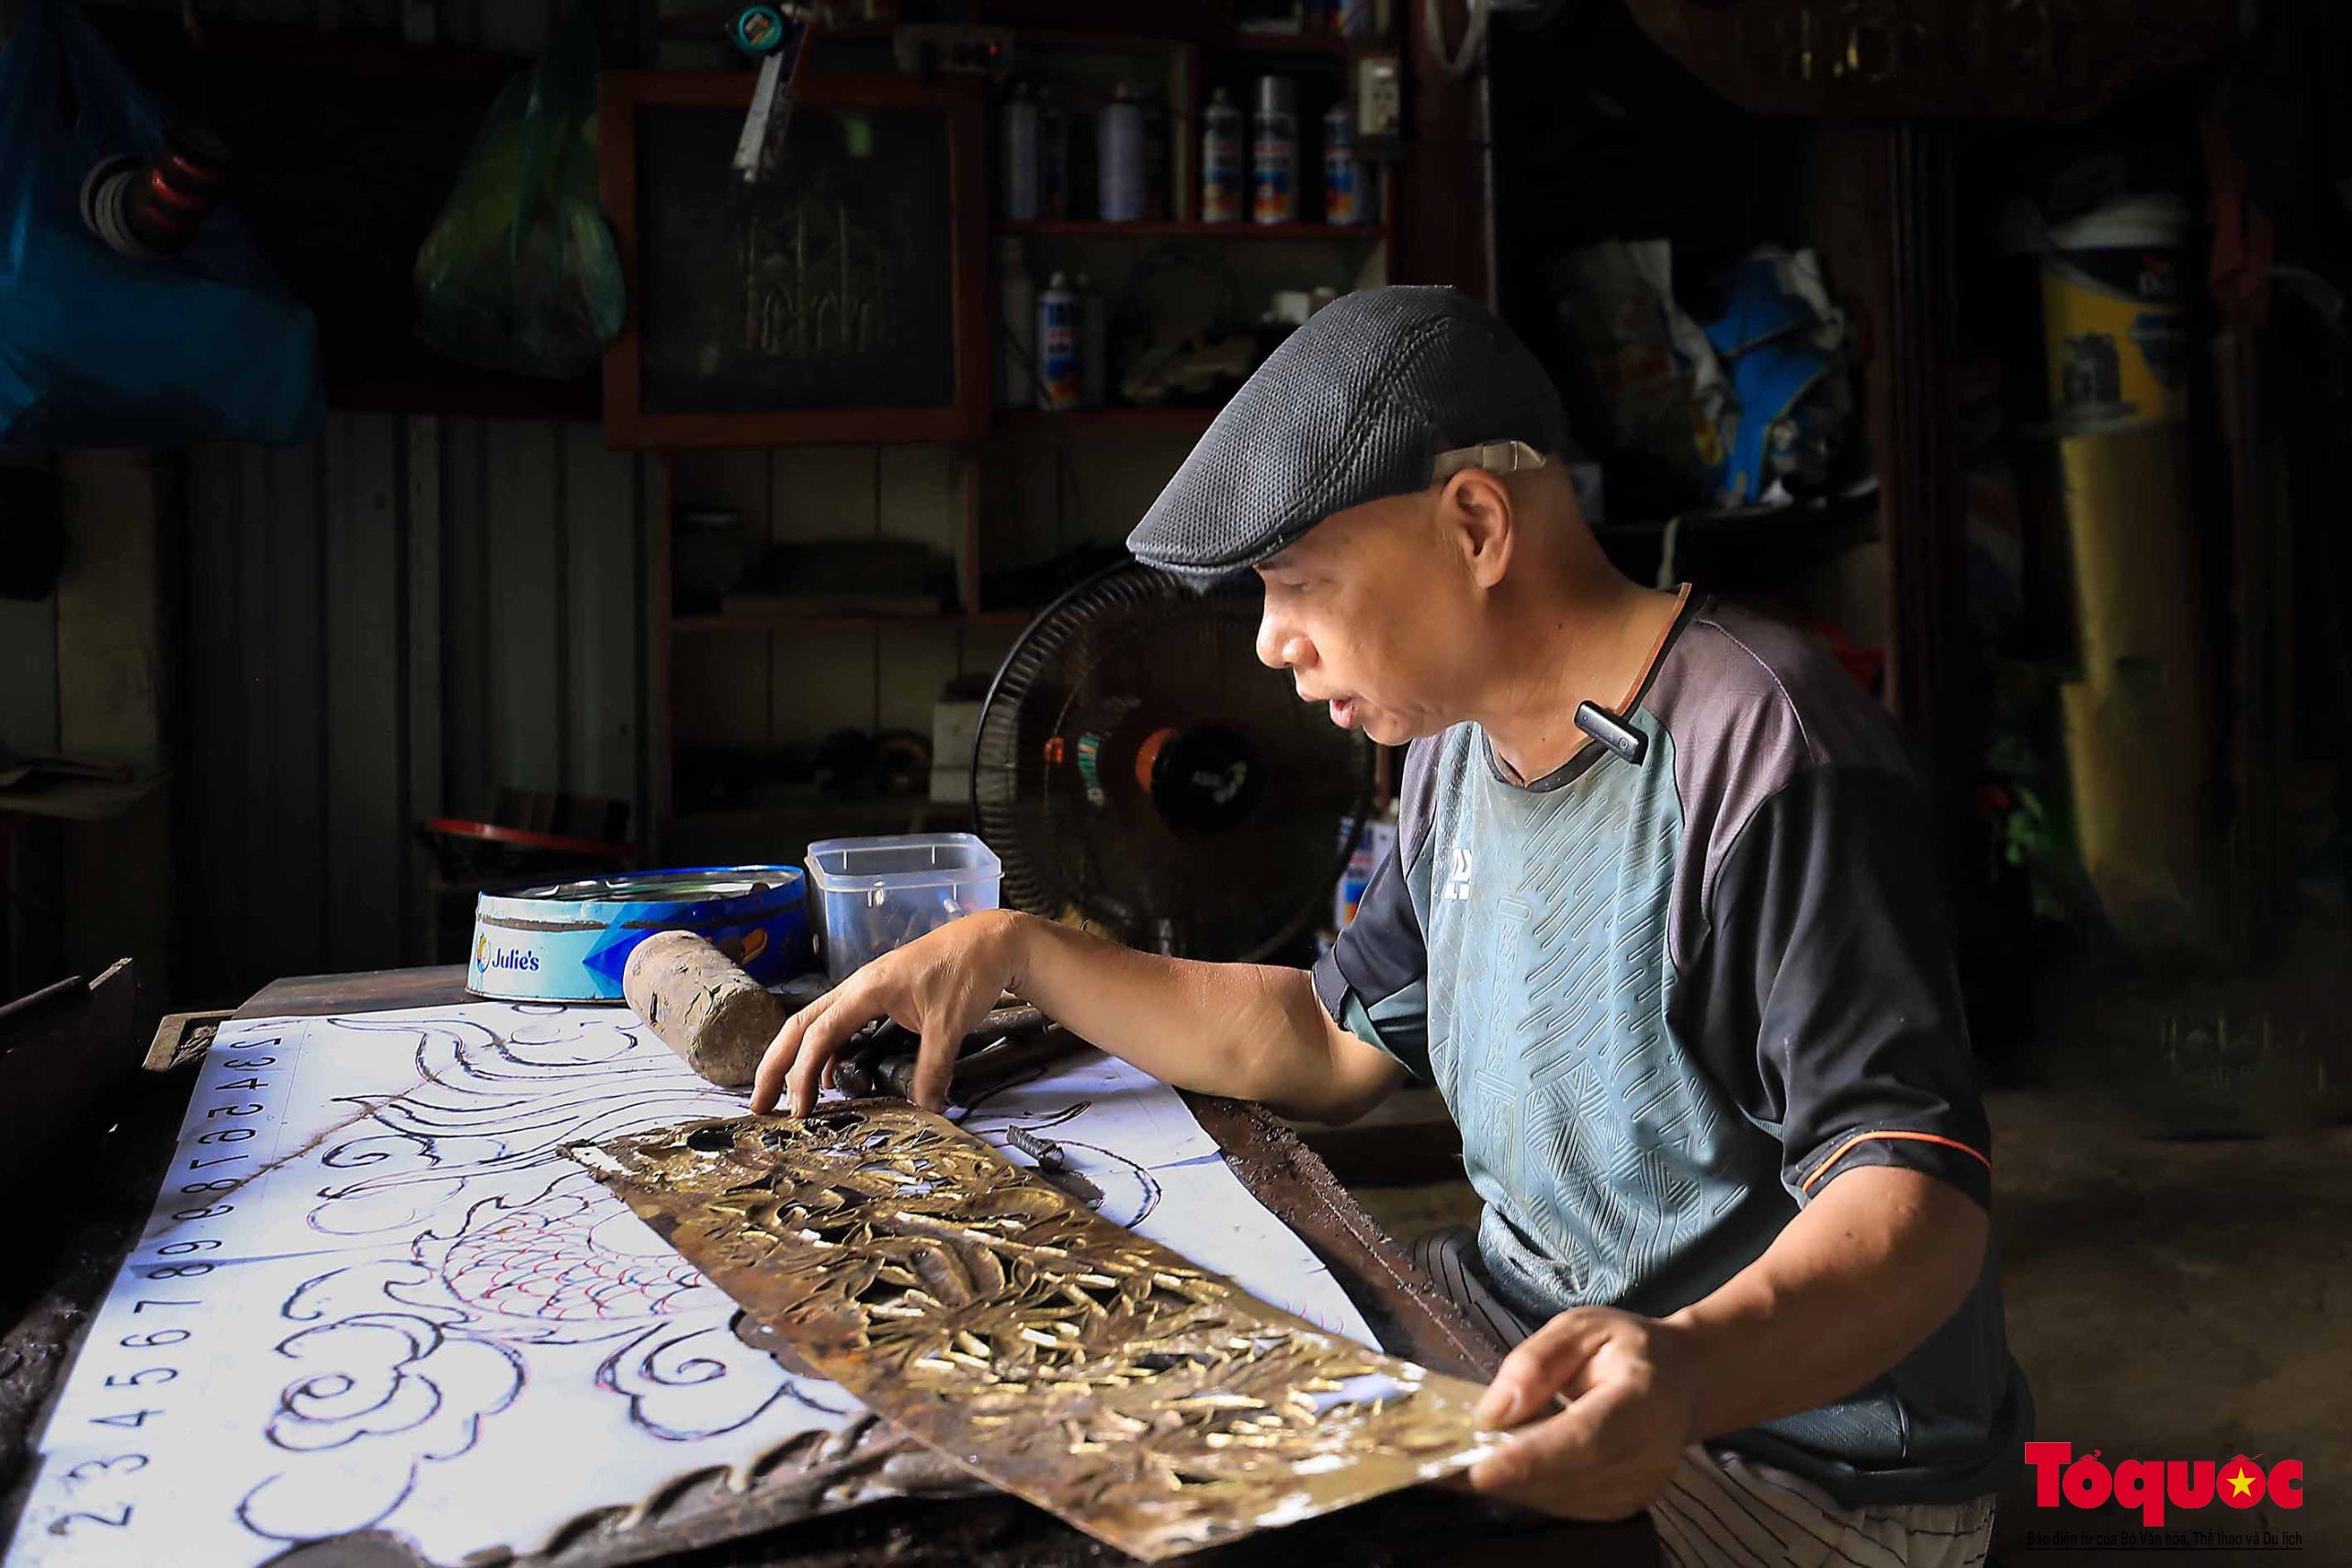 Làng nghề đúc đồng truyền thống 400 năm tuổi ở Quảng Nam - Ảnh 11.